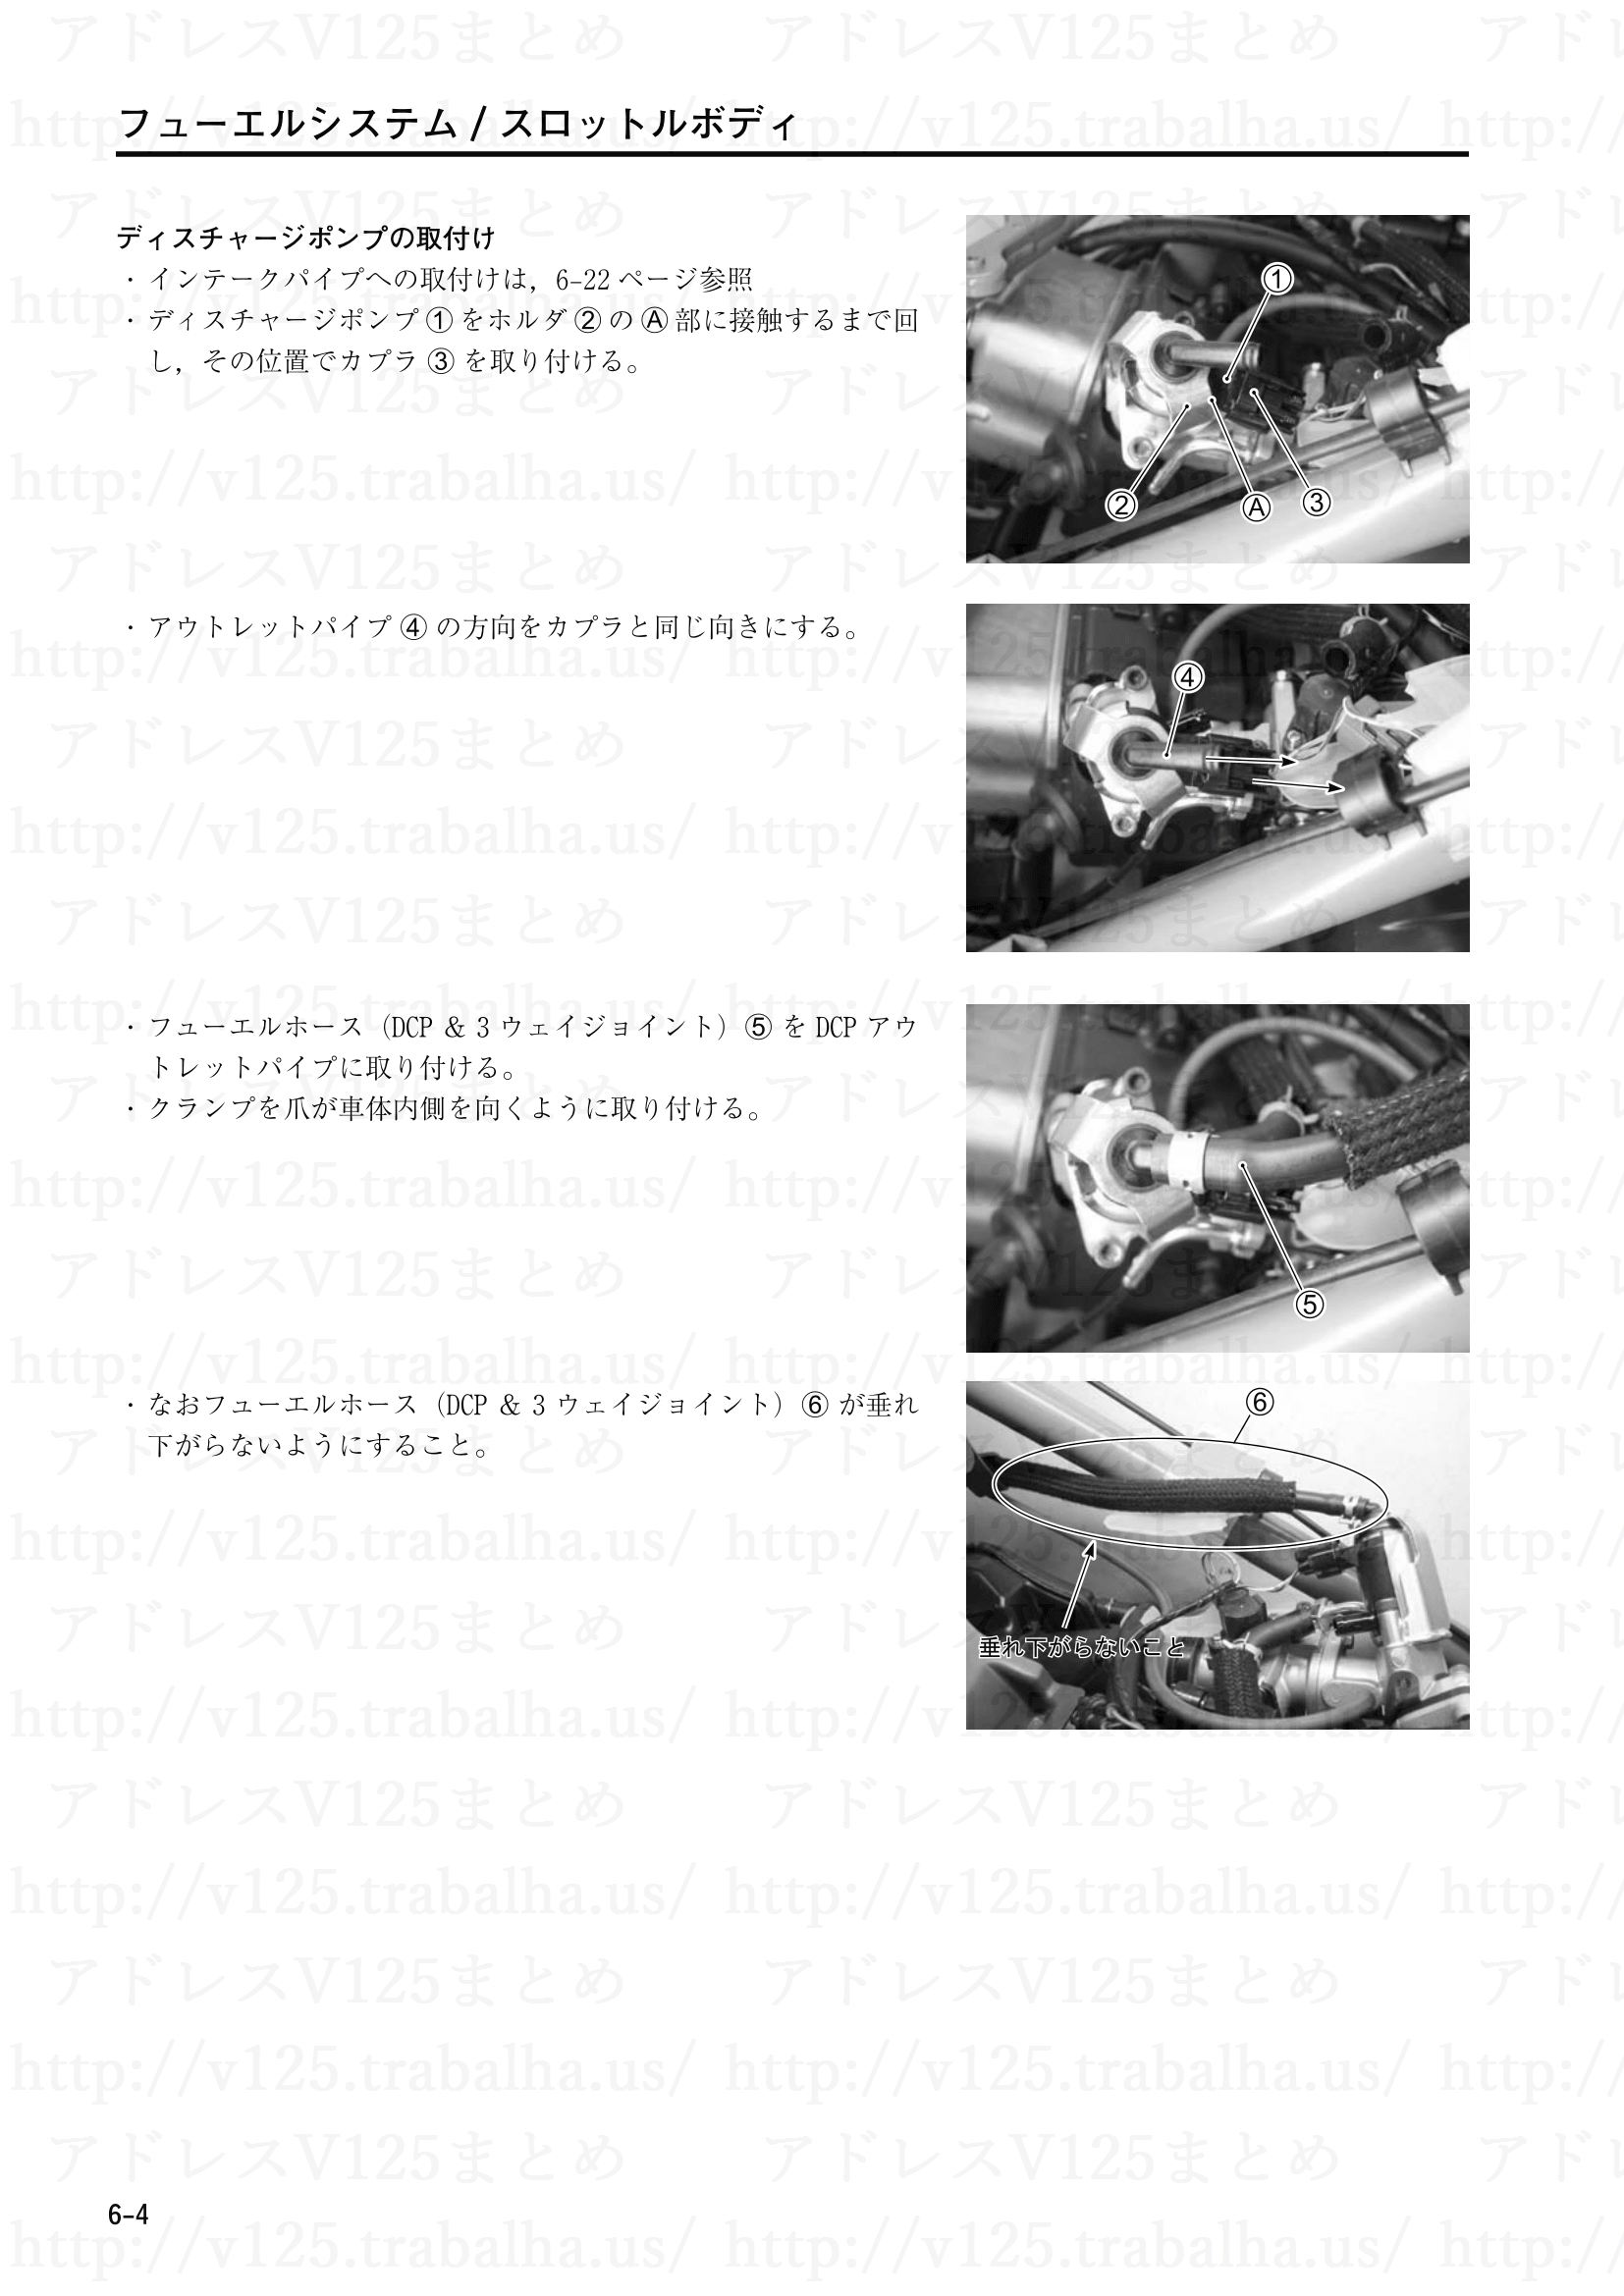 6-4【フューエルシステム／スロットルボディ】ディスチャージポンプの取付け